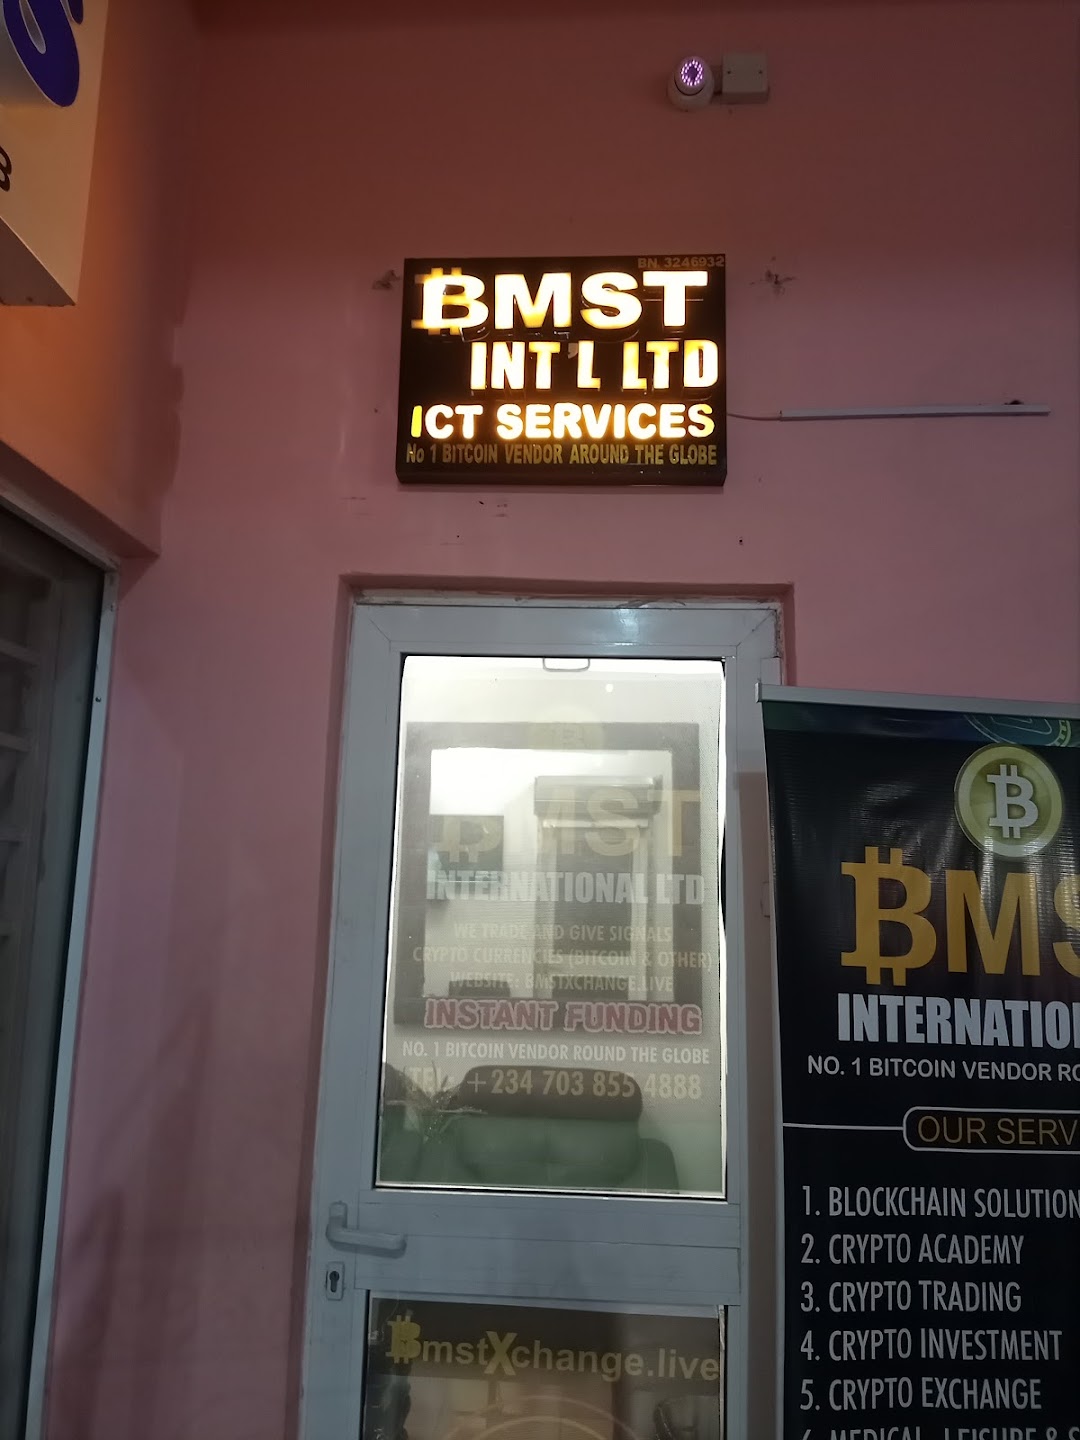 BMST INTERNATIONAL LTD